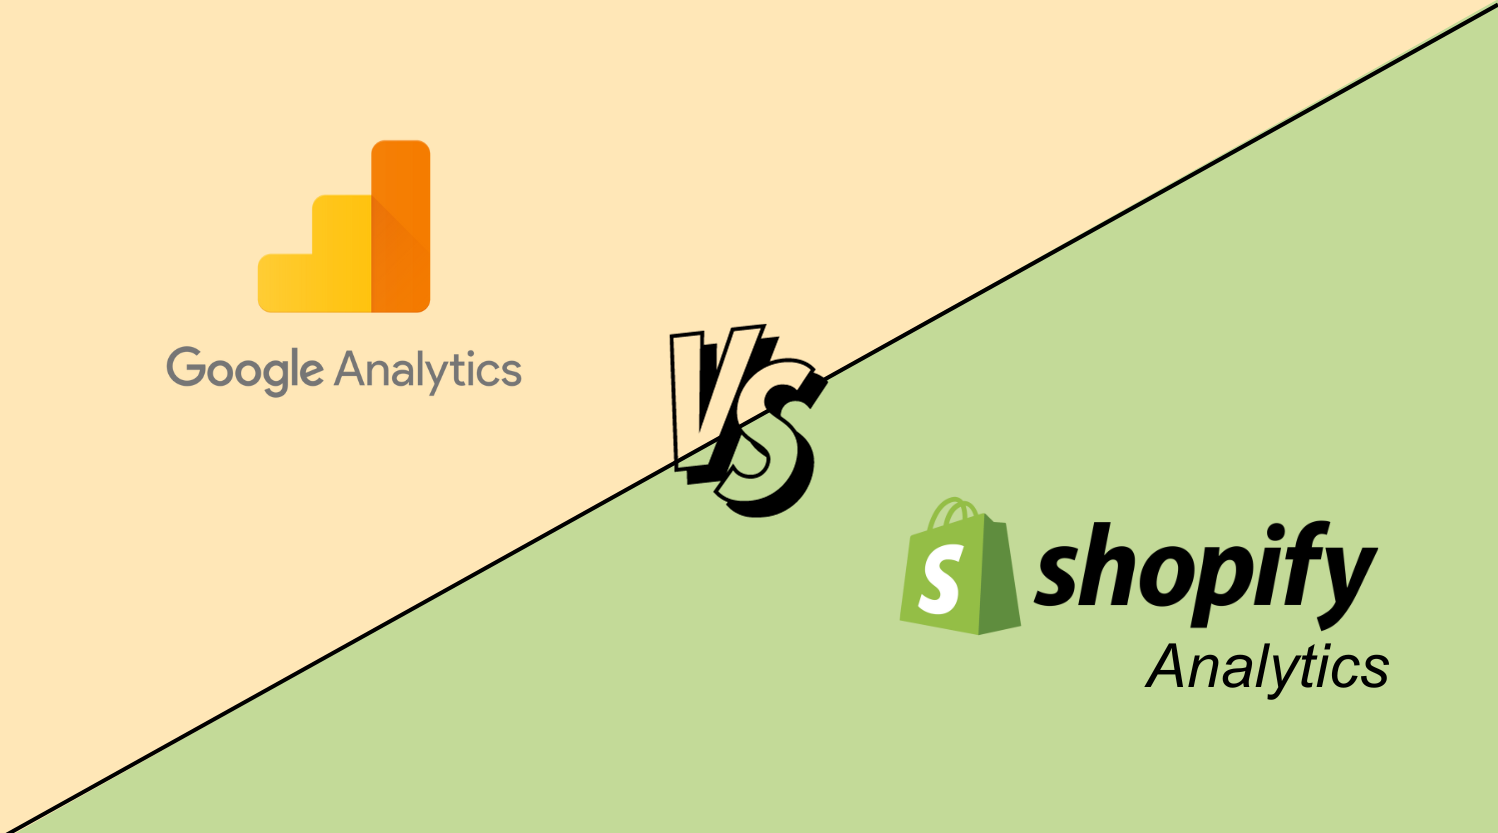 Google Analytics versus Shopify Analytics